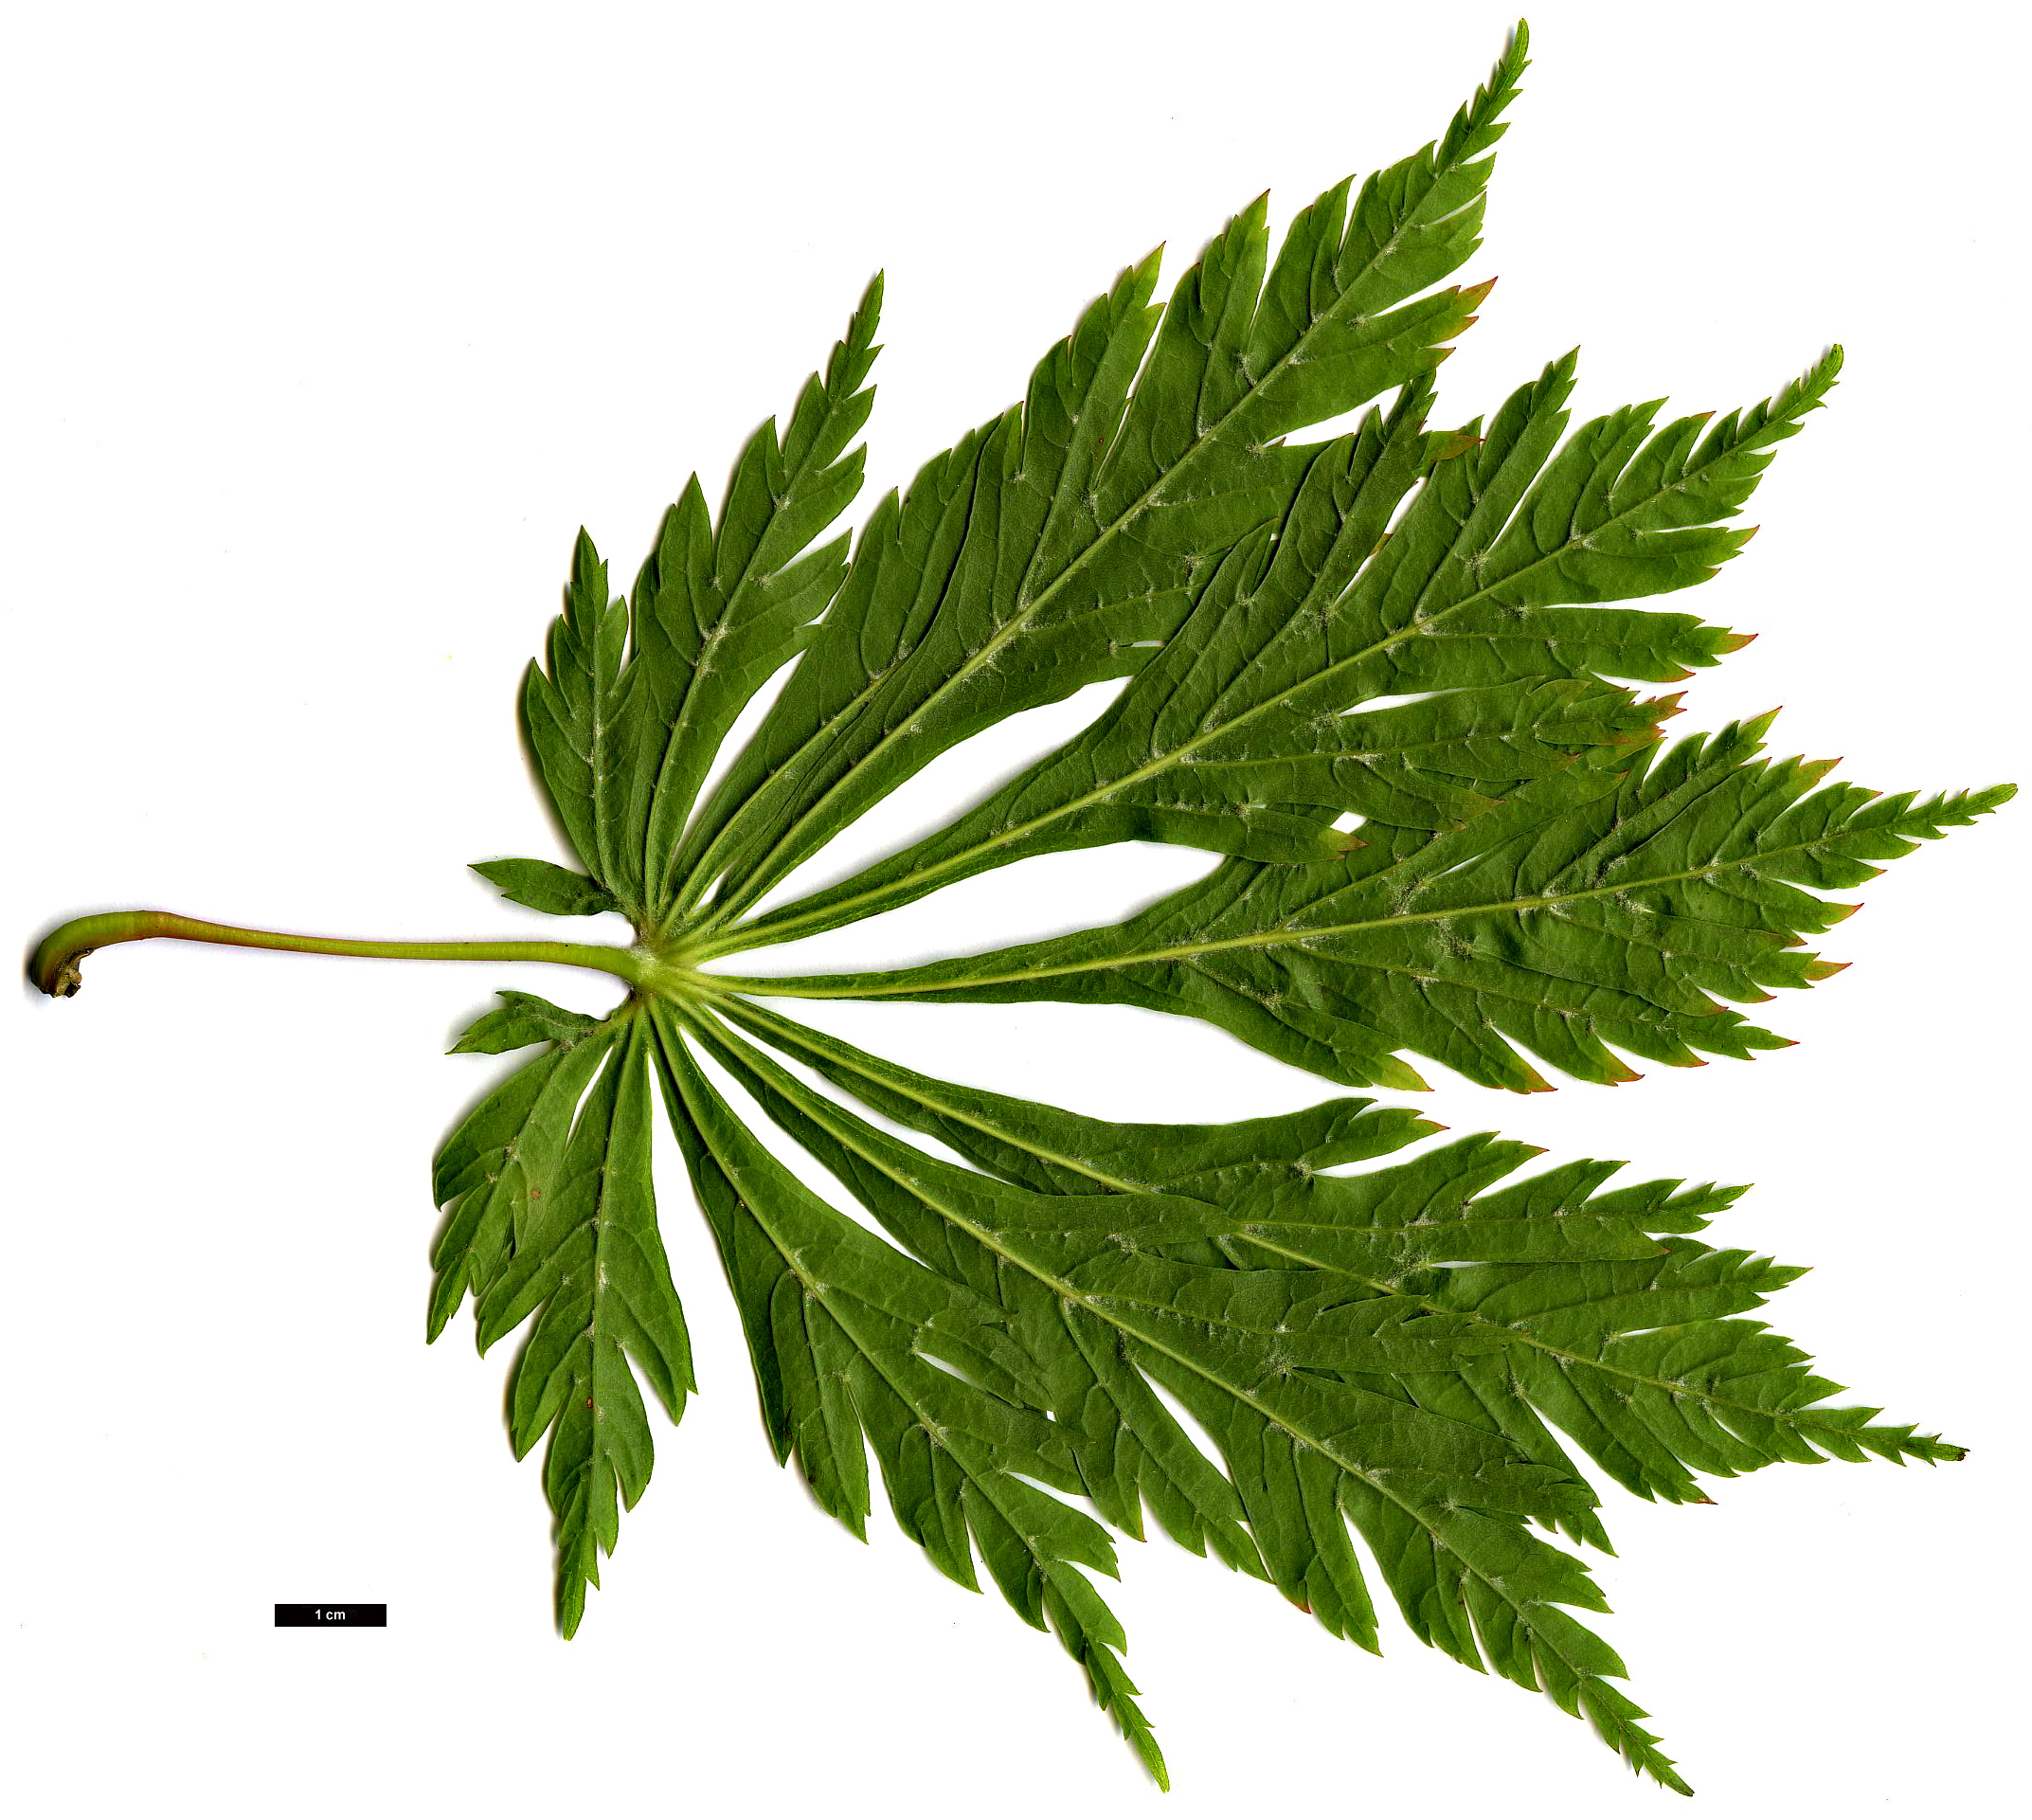 High resolution image: Family: Sapindaceae - Genus: Acer - Taxon: japonicum - SpeciesSub: 'Aconitifolium'